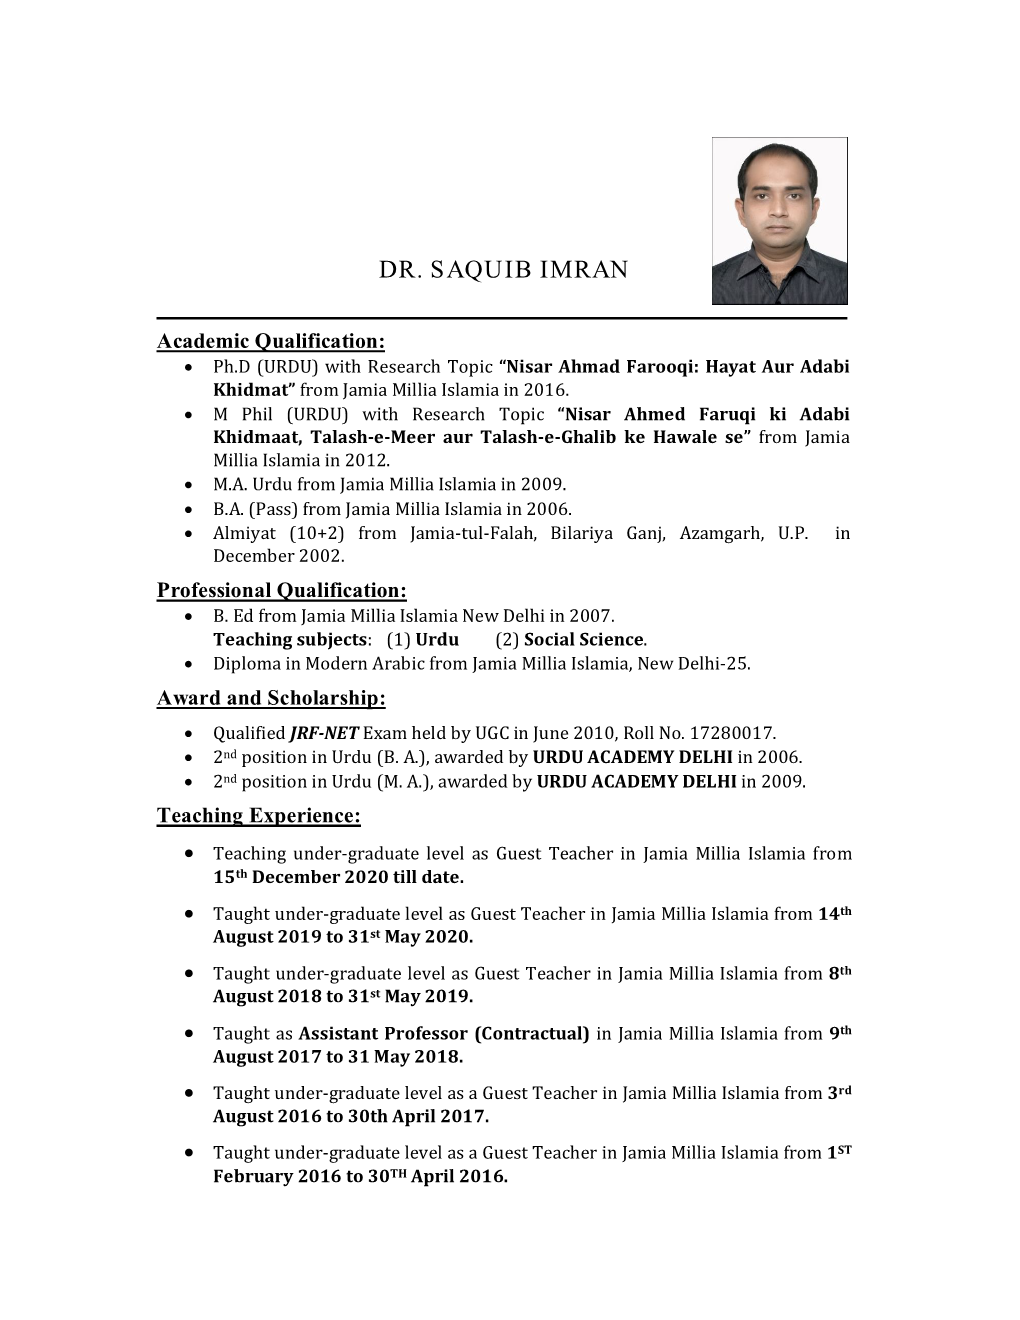 Dr. Saquib Imran